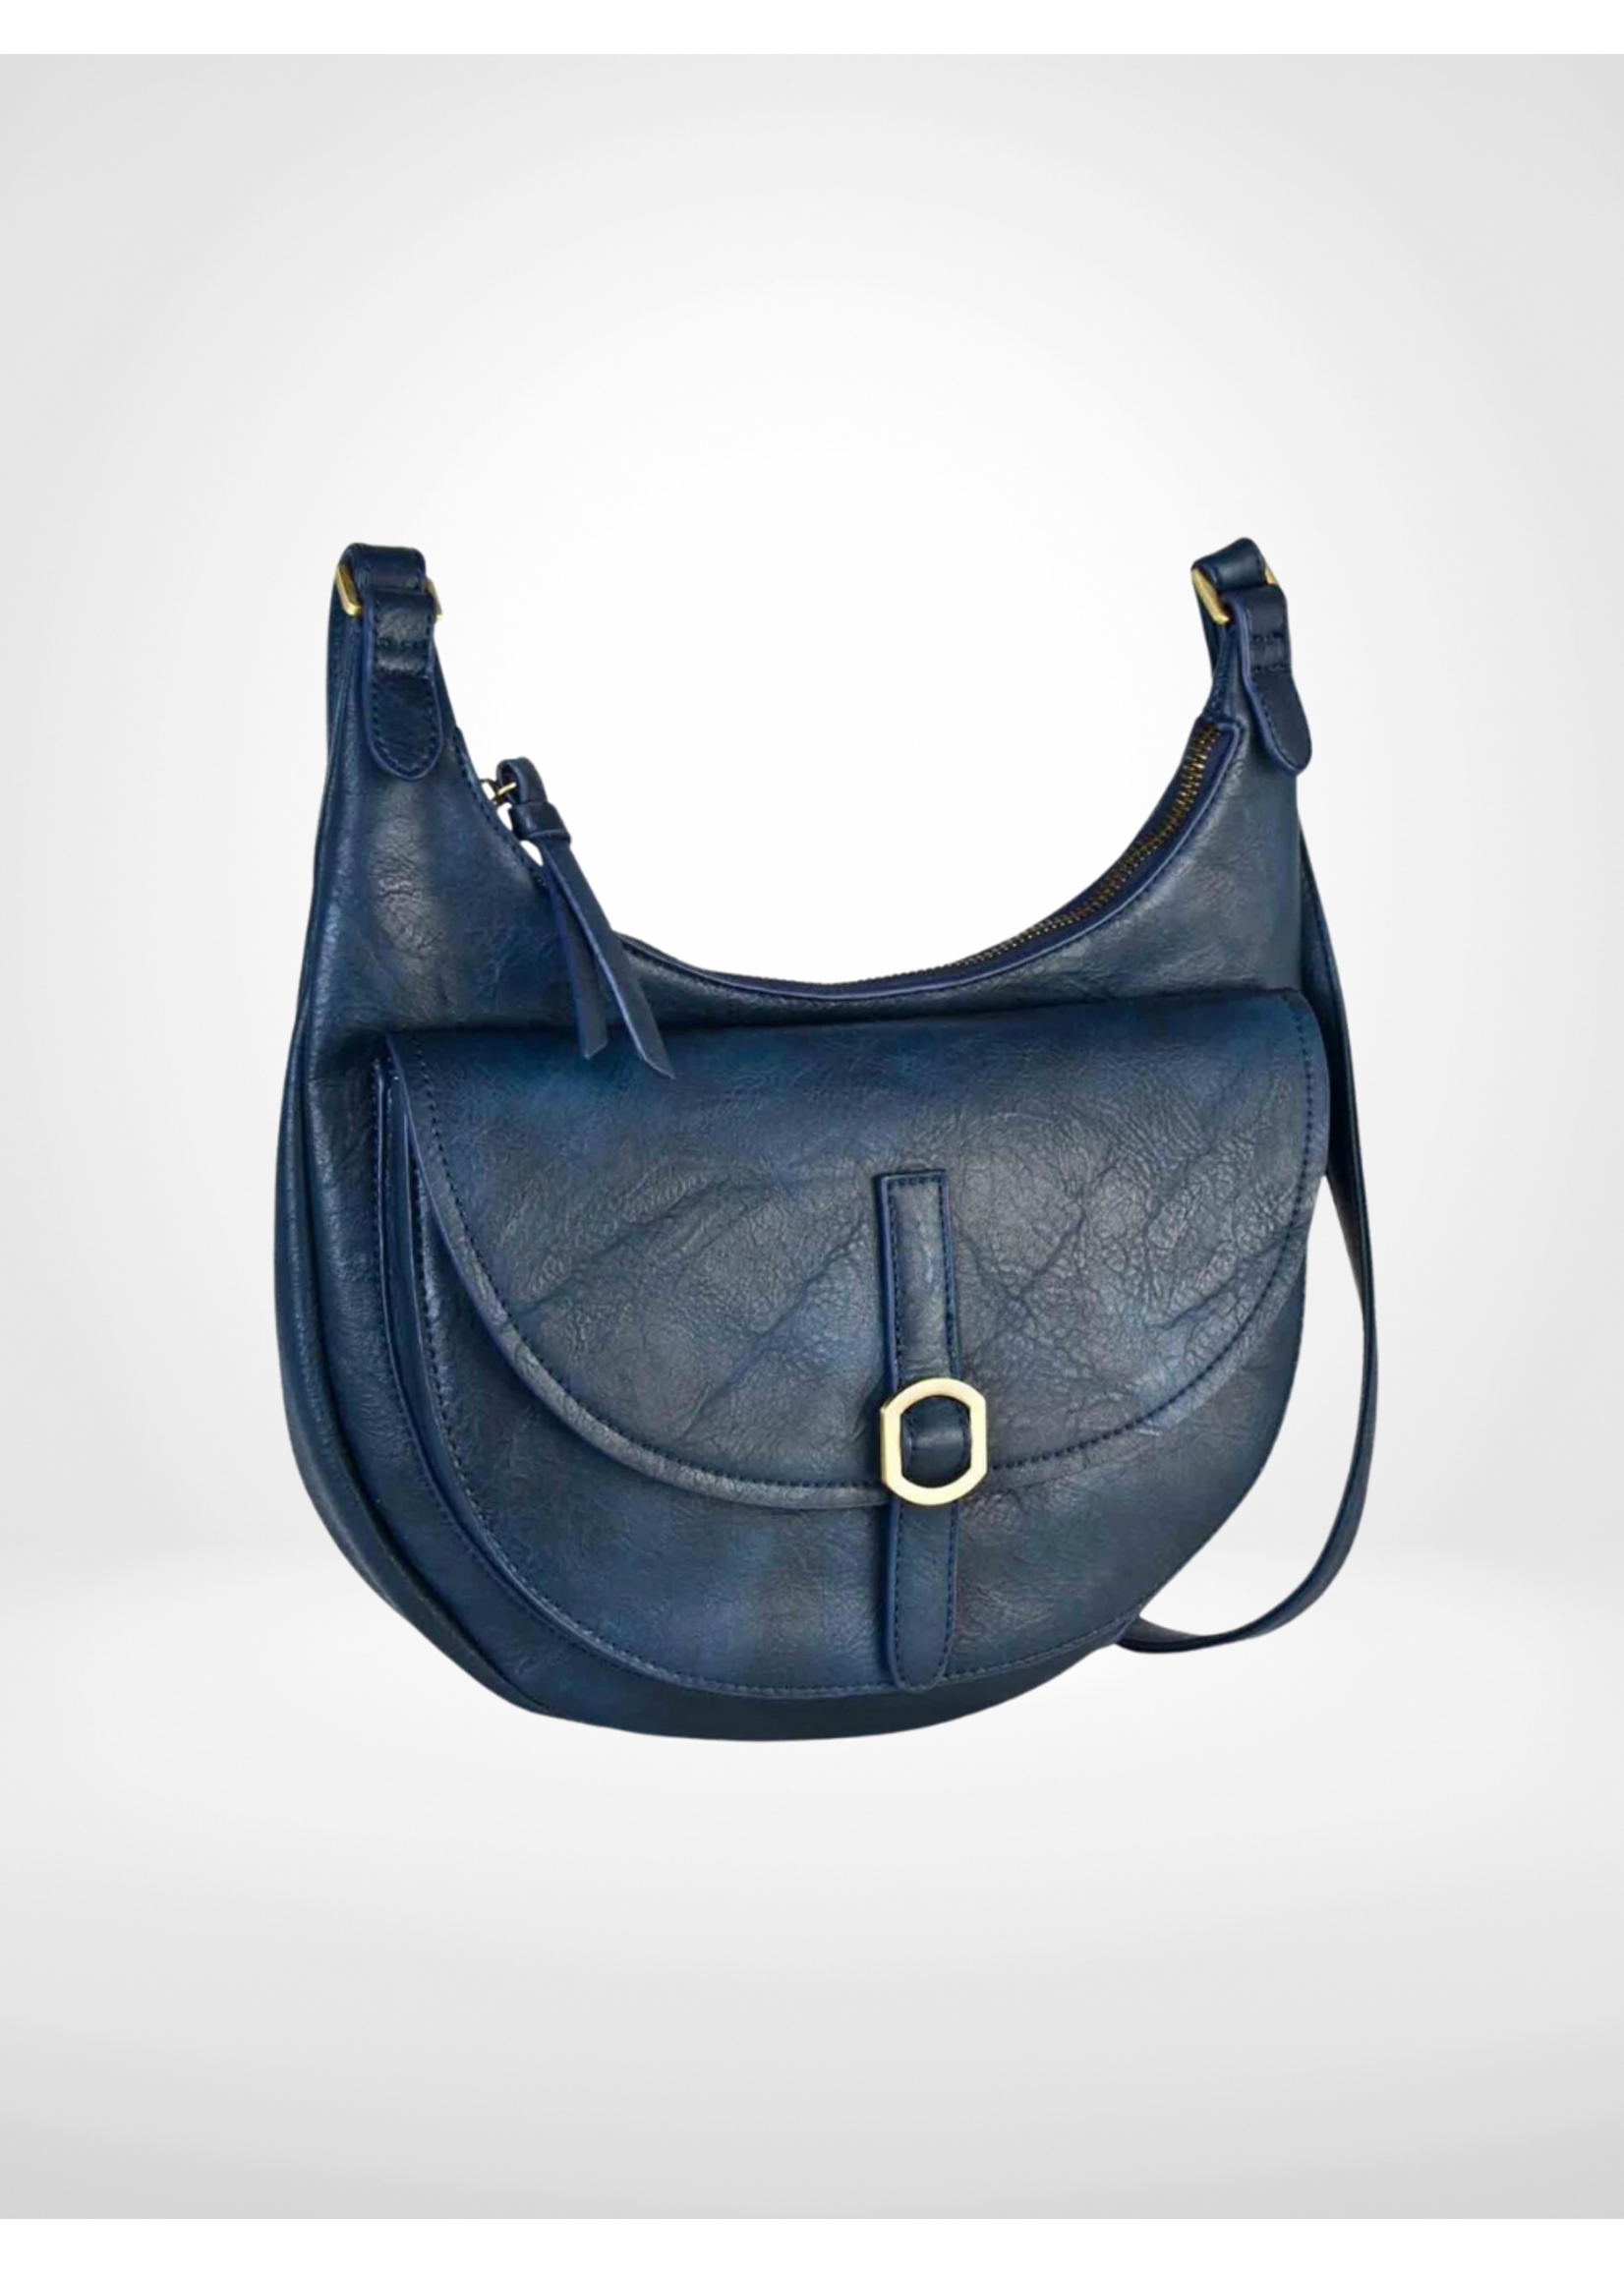 Sasha + Sofi Black Cross Body Purse Bag Zipper Details Shoulder Strap EUC  A5606